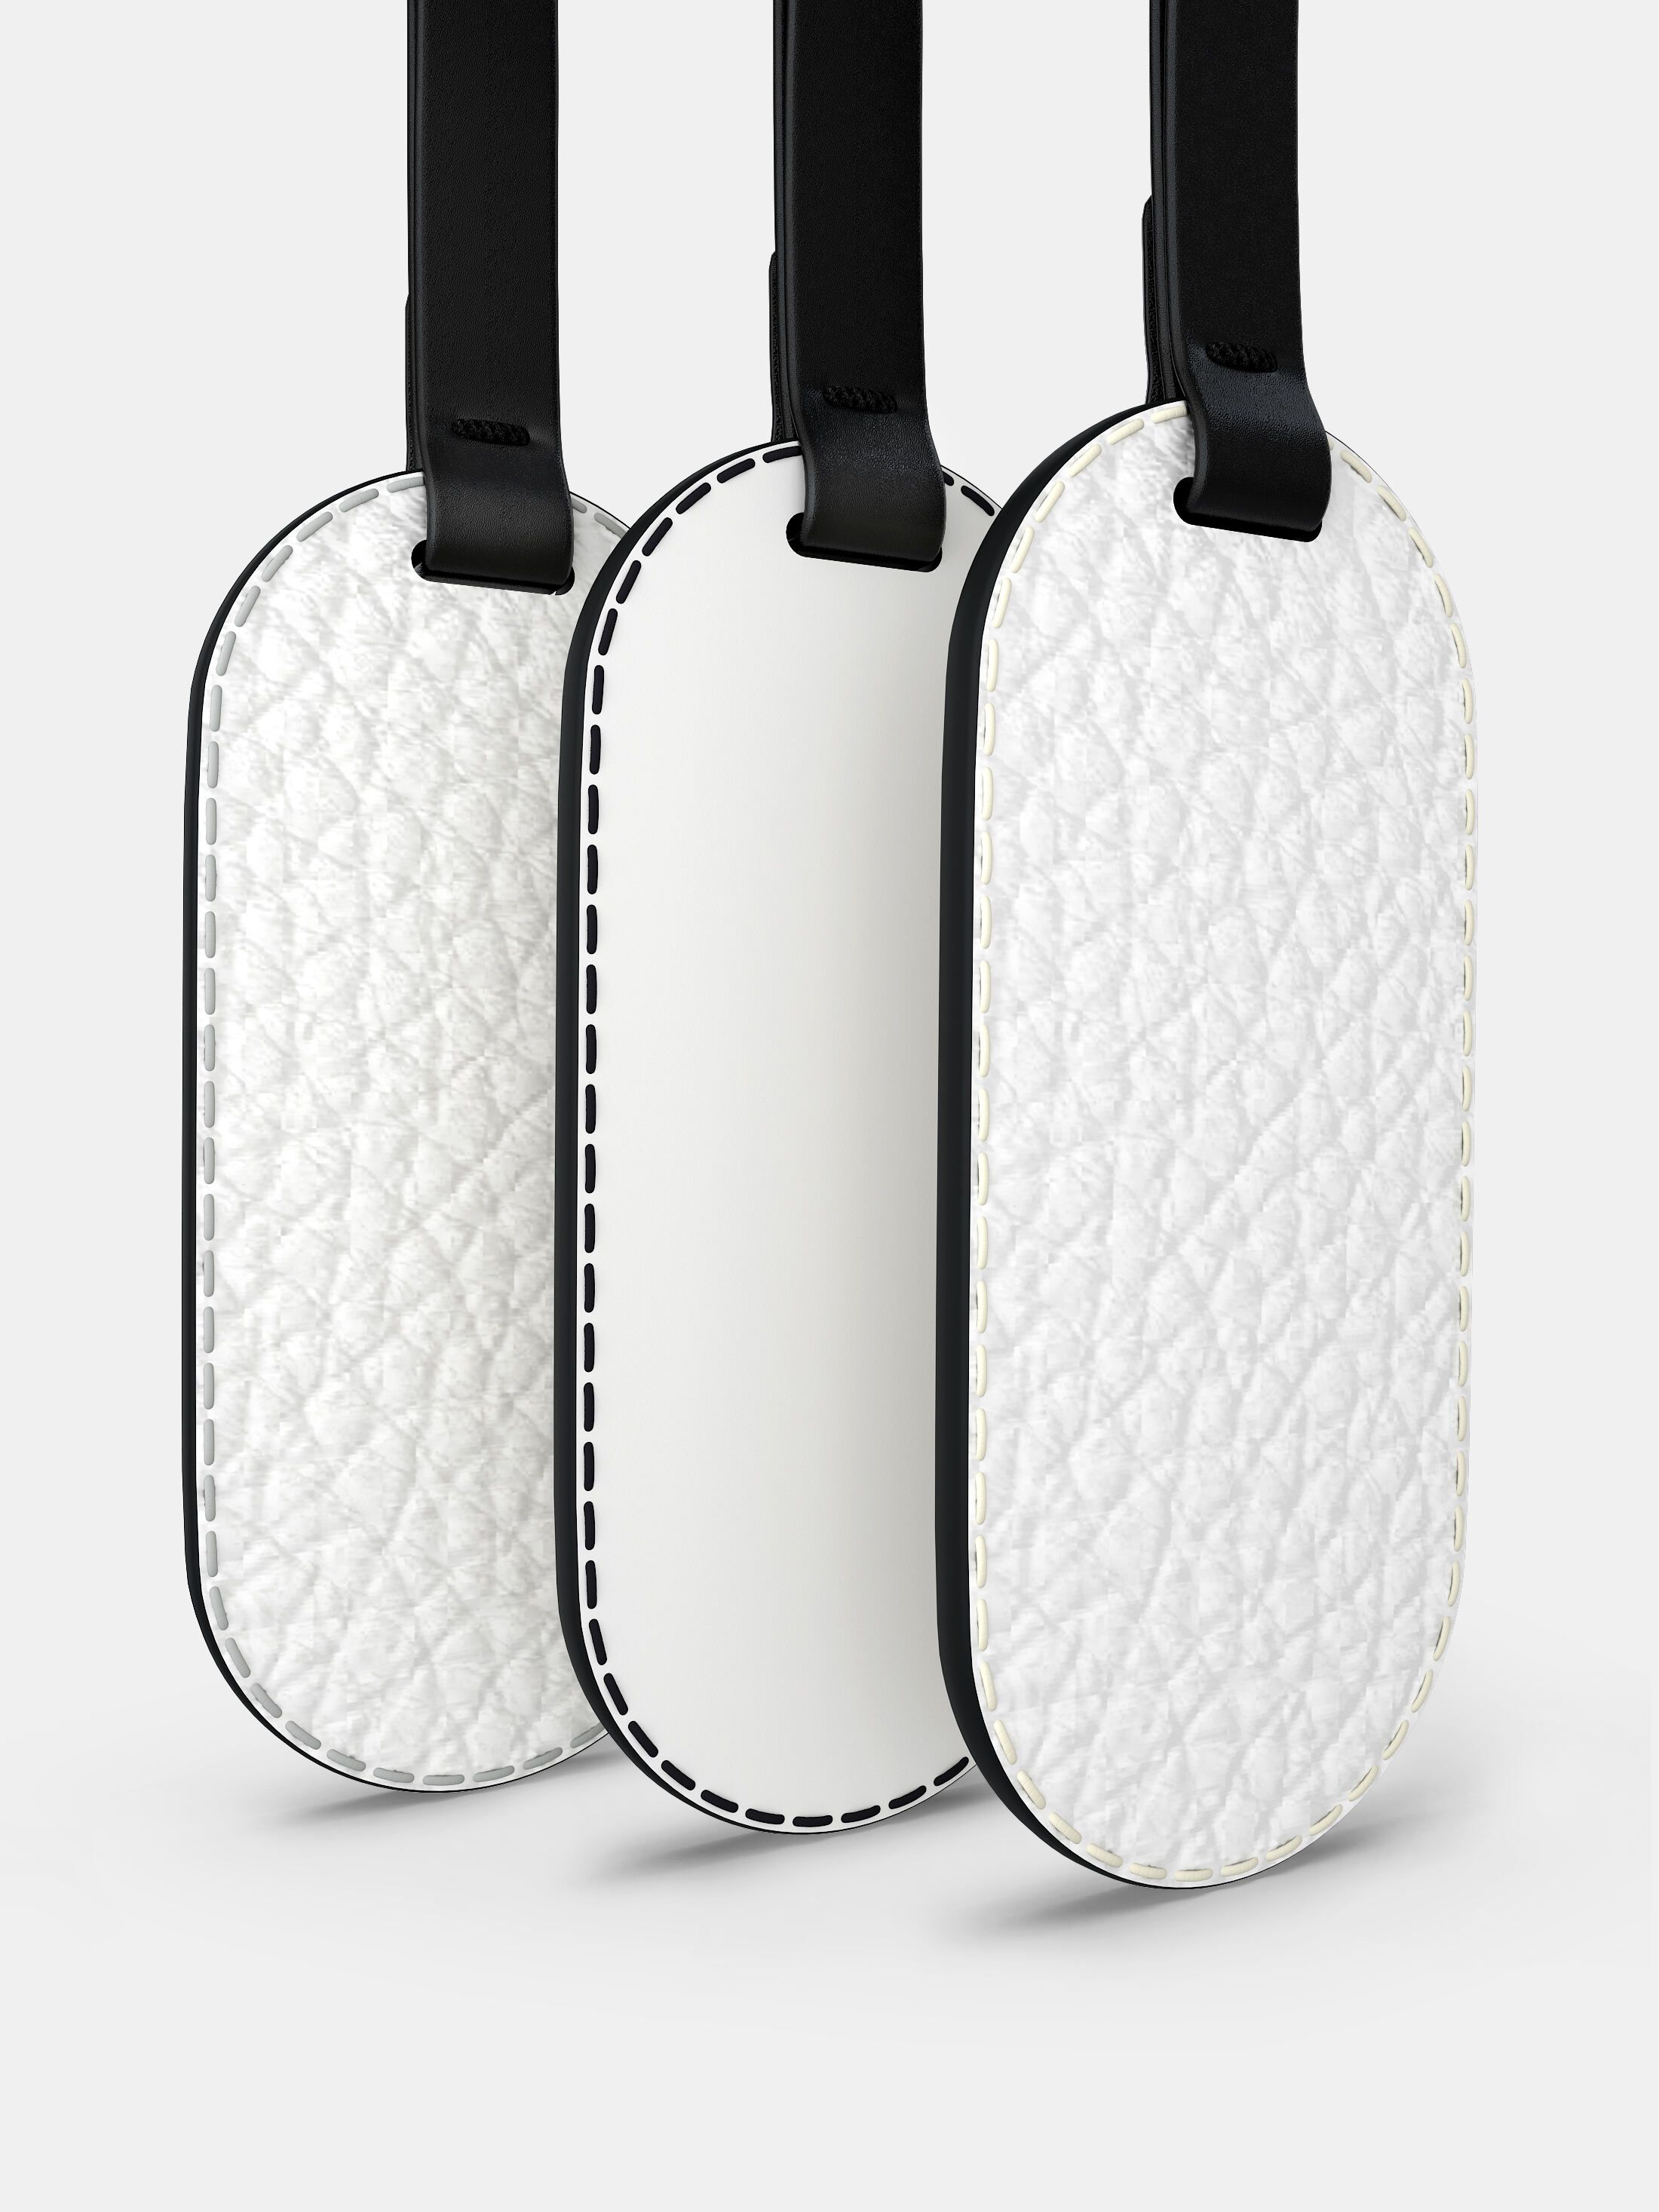 Dettagli del charm per borsa in pelle personalizzato